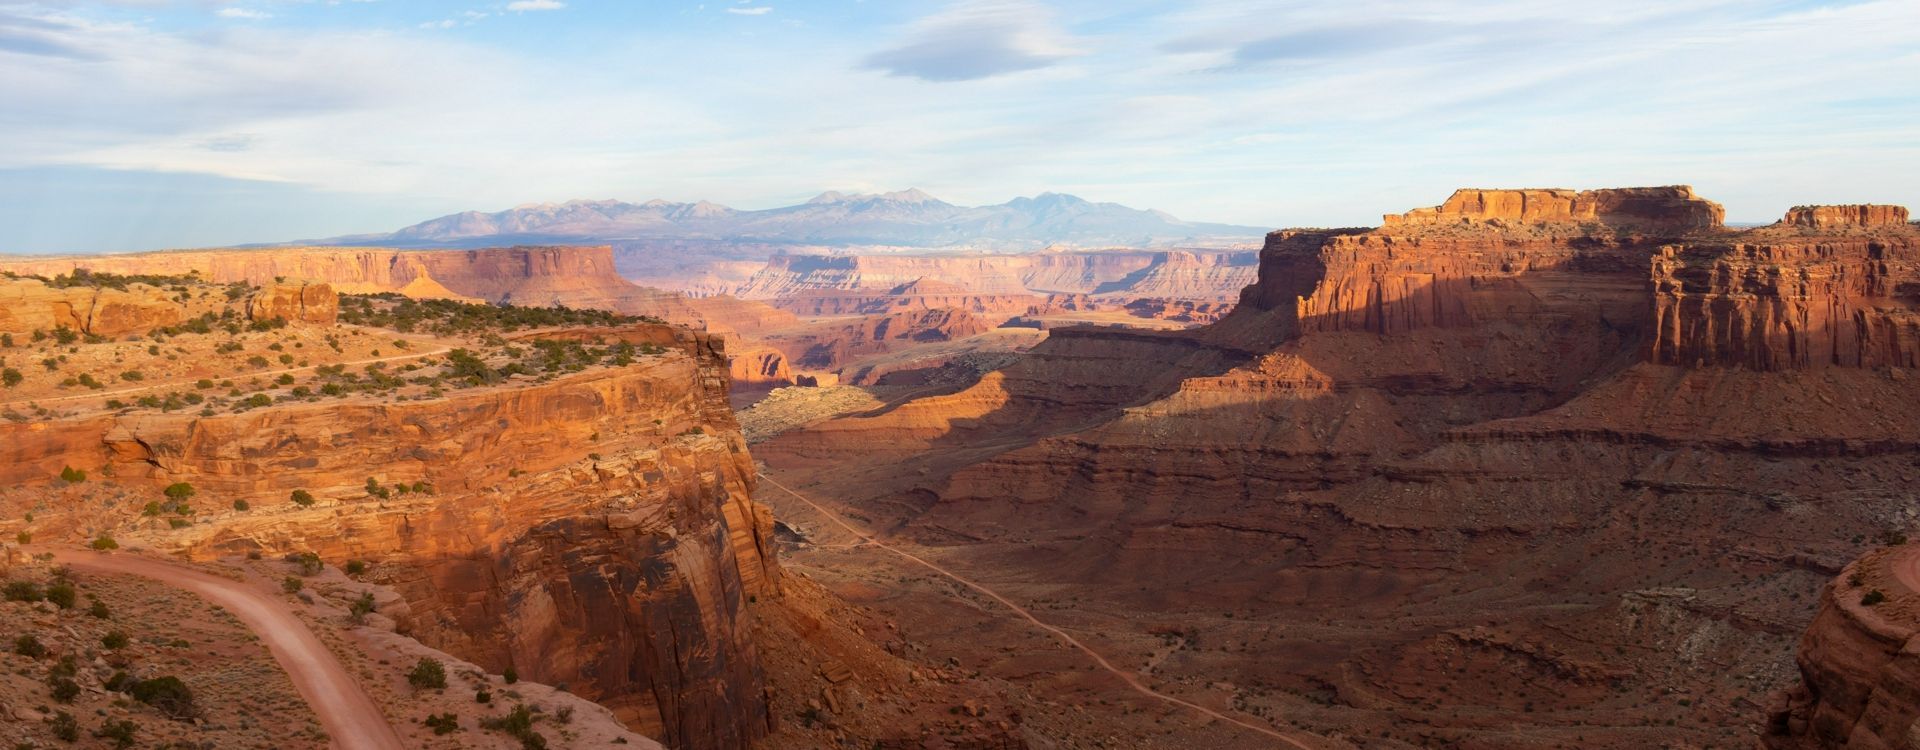 Intrepid-Travel-christoph-von-gellhorn-Utah-CanyonlandsNationalPark-unsplash.jpg